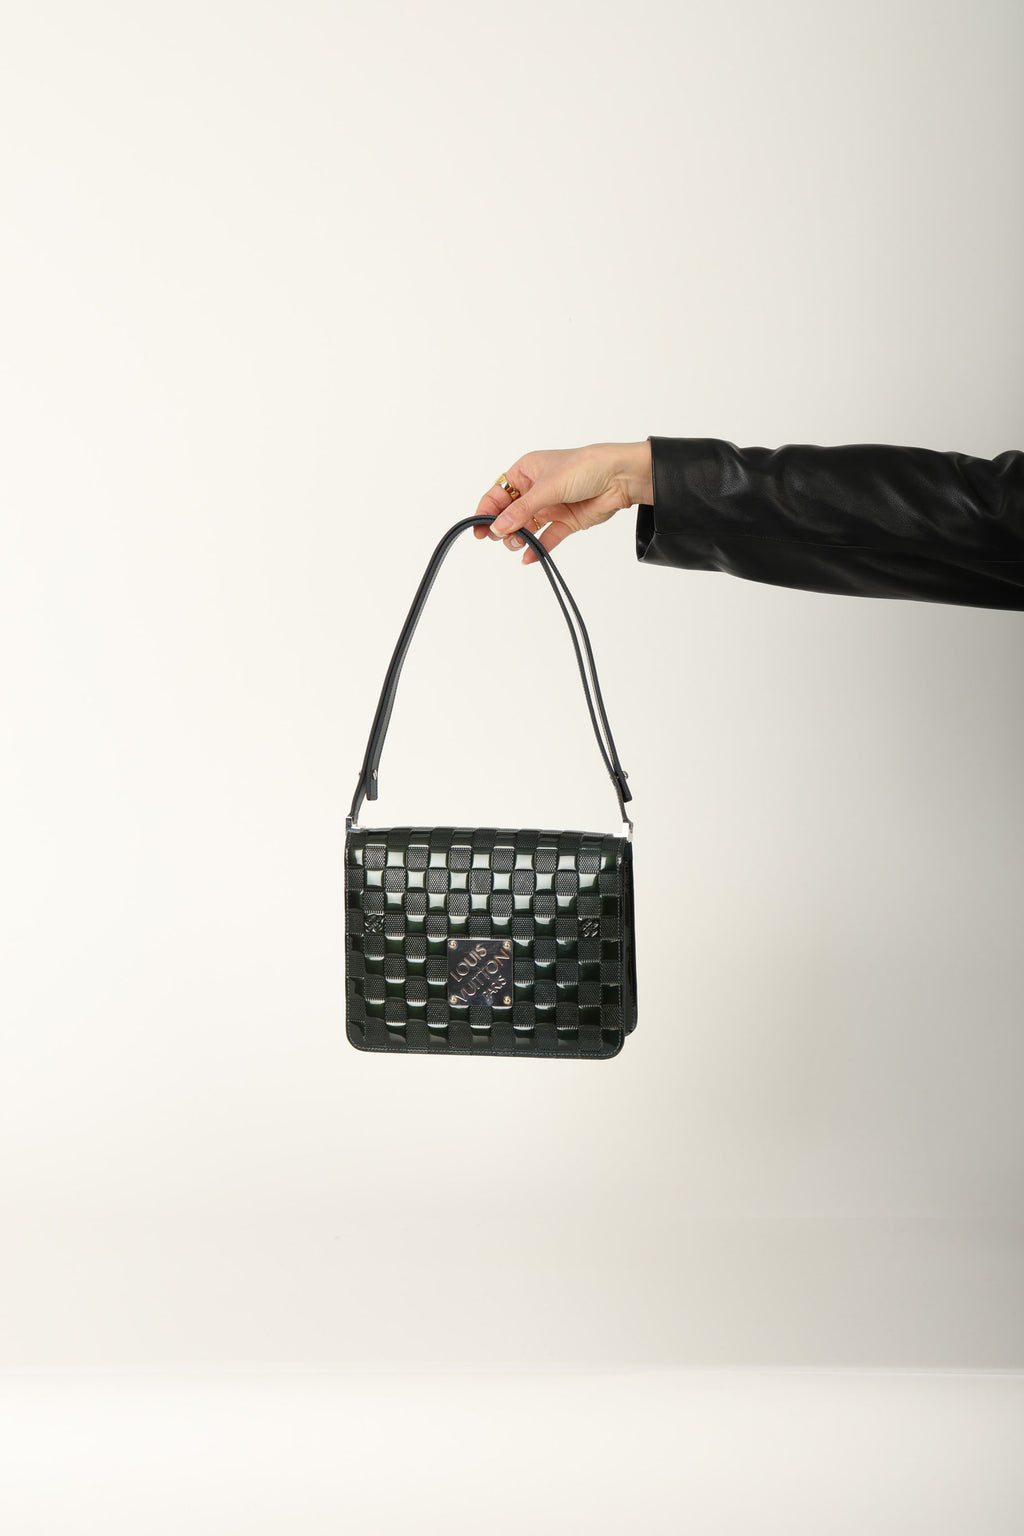 Louis Vuitton Vernis Damier Flap Bag